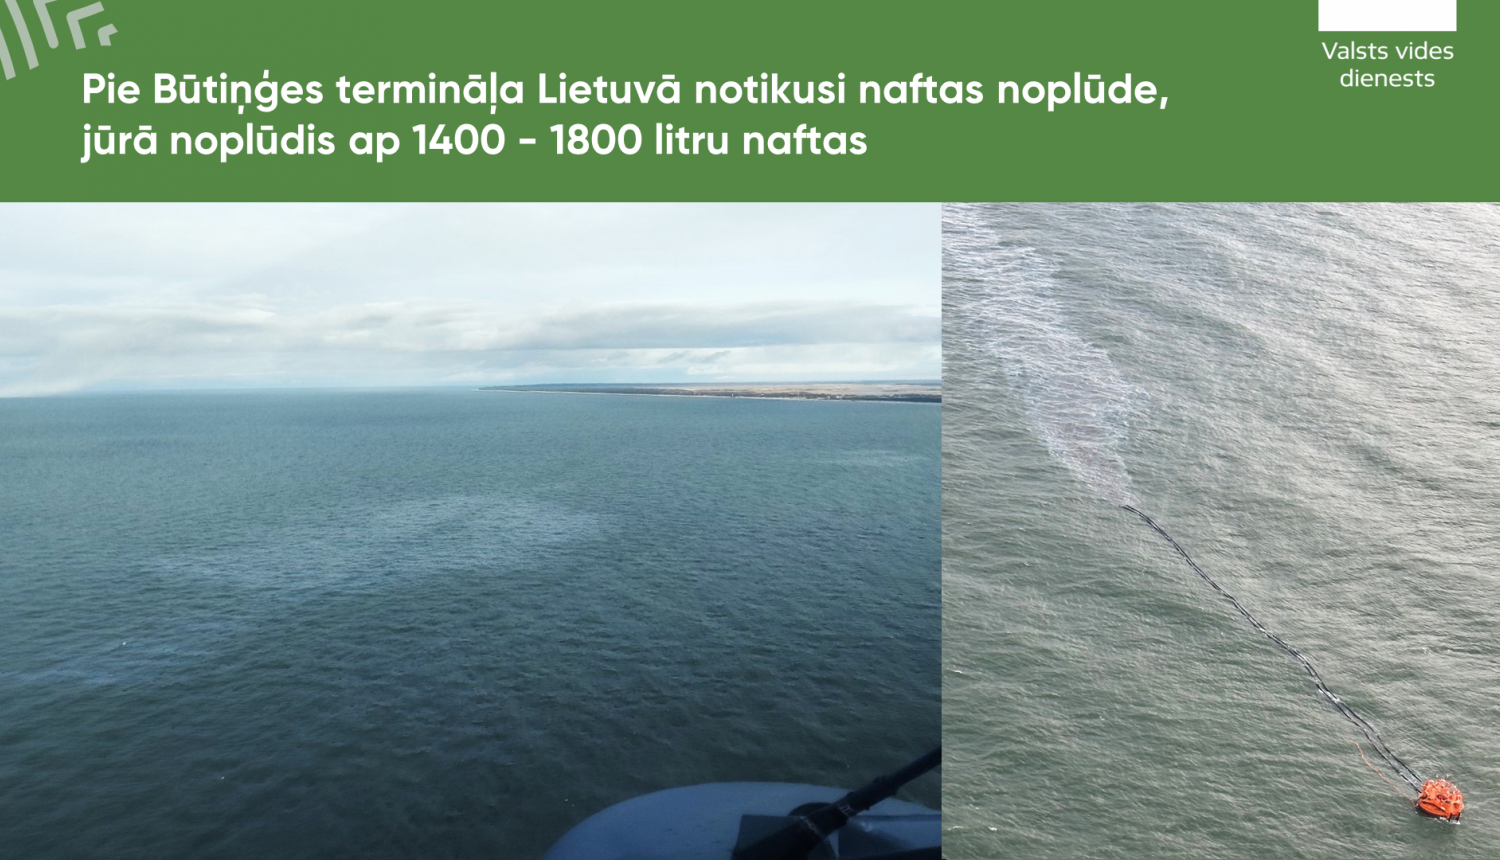 Pie Būtiņģes termināļa Lietuvā notikusi naftas noplūde, jūrā noplūdis ap 1400 - 1800 litru naftas